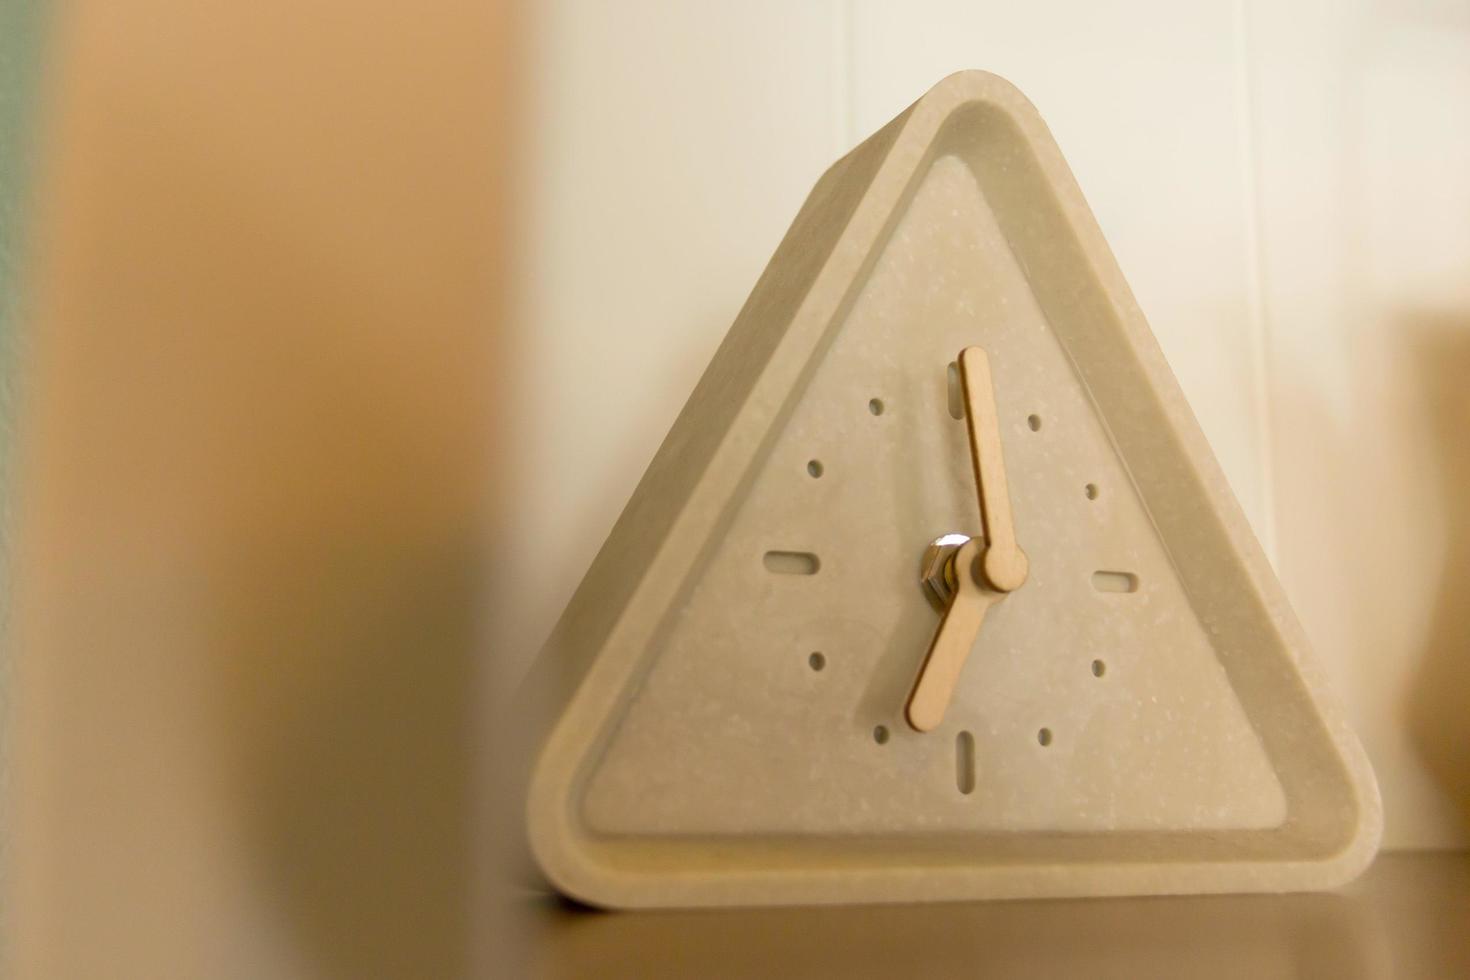 reloj triangular a las siete en punto. foto